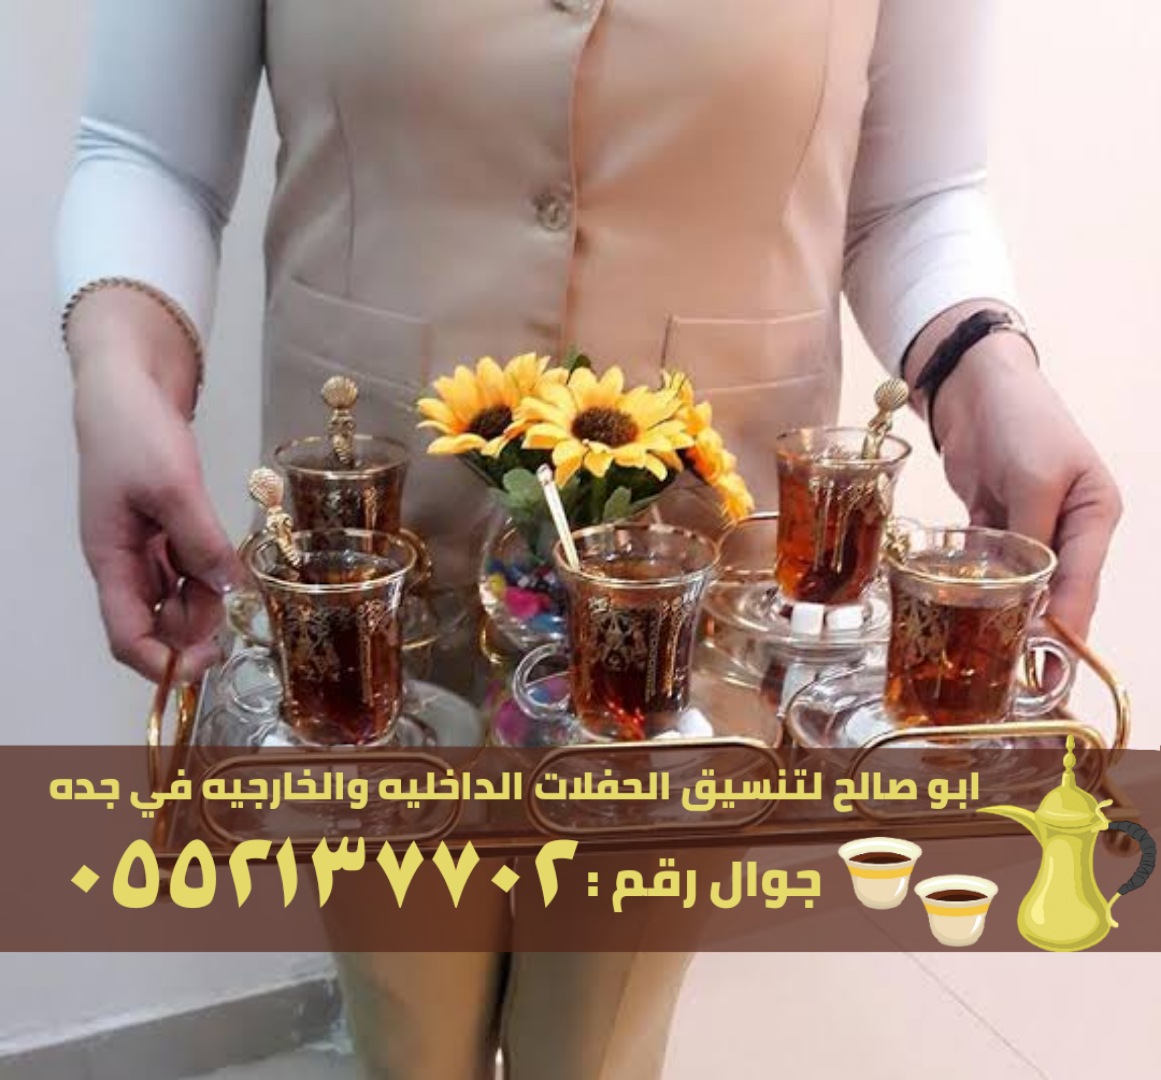 صبابين قهوة و قهوجيات في جدة, 0552137702 P_2466mtvtr6